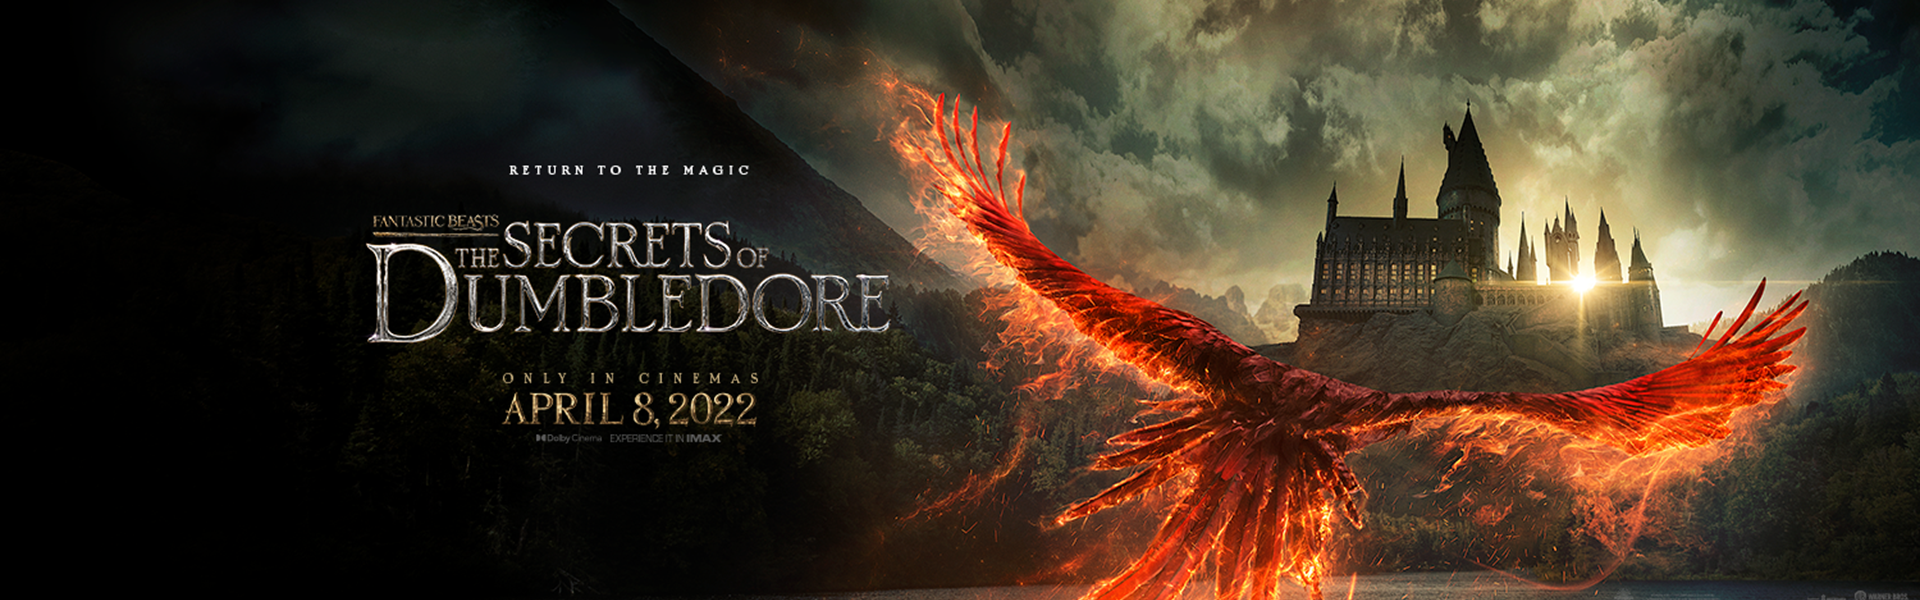 FILM: Fantastic Beasts 3: The Secrets of Dumbledore (12A)